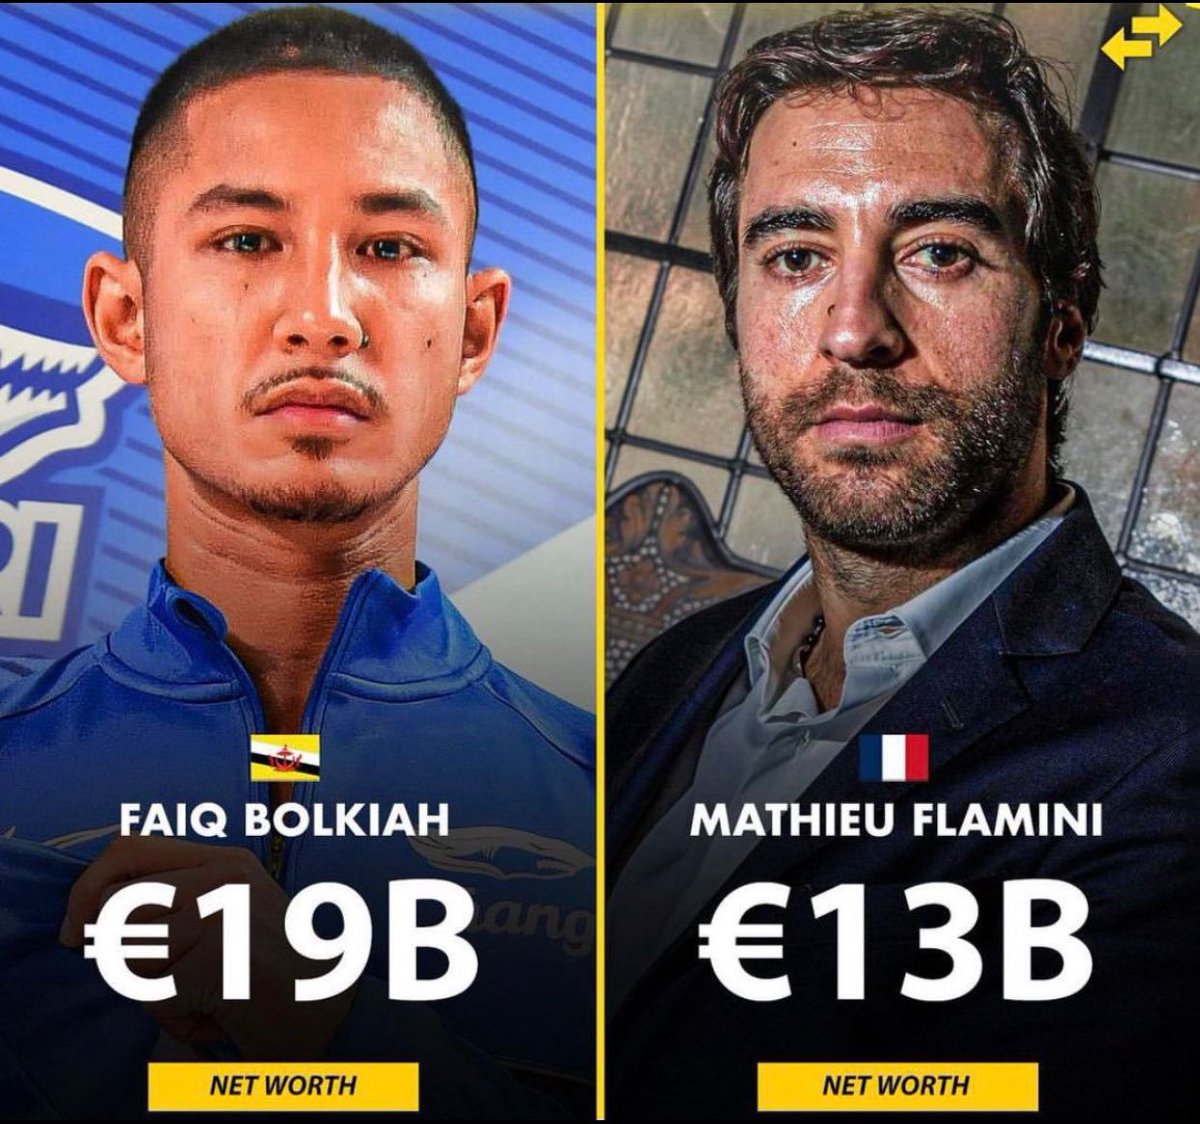 A thread of wealthiest footballers in the World.🧵

1. Faiq Bolkiah & Mathieu Flamini